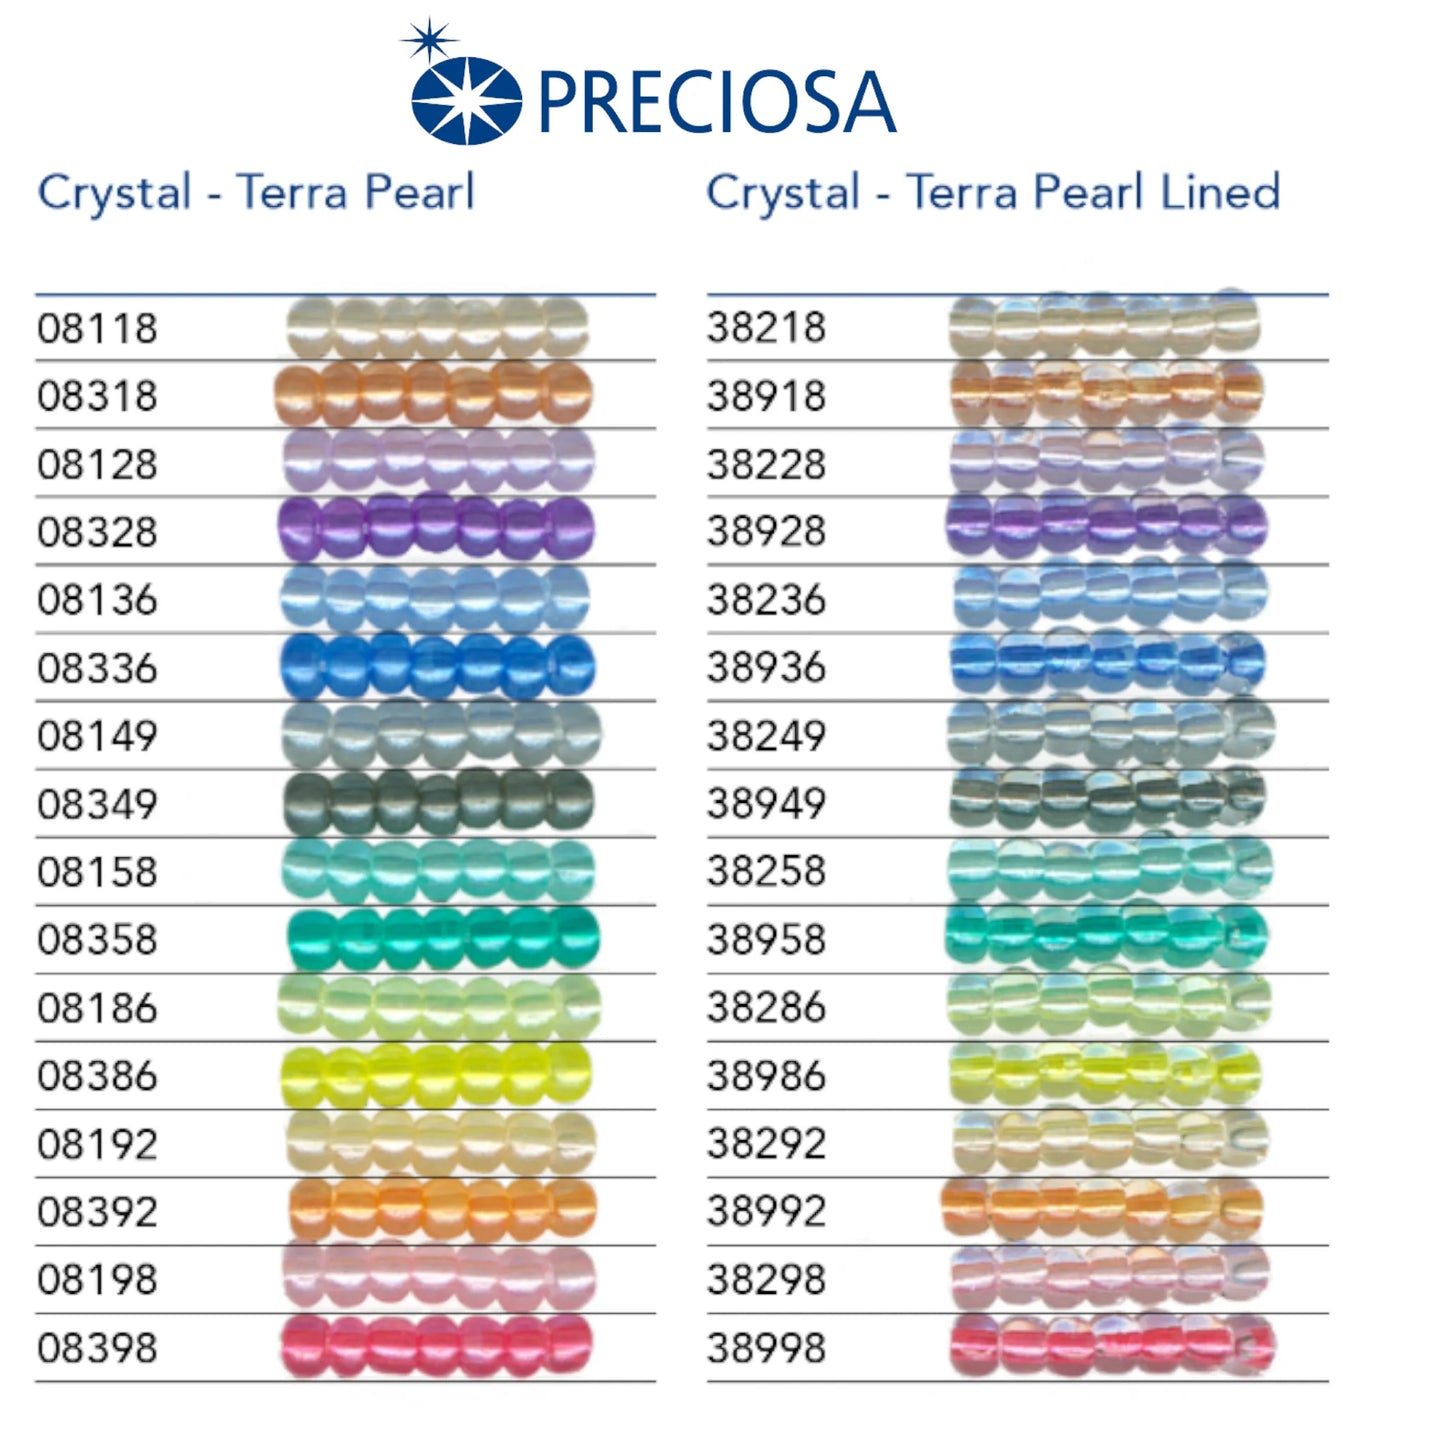 38936 Rocailles tchèques PRECIOSA Rocailles 10/0 bleu clair. Cristal – Terra Pearl doublé.